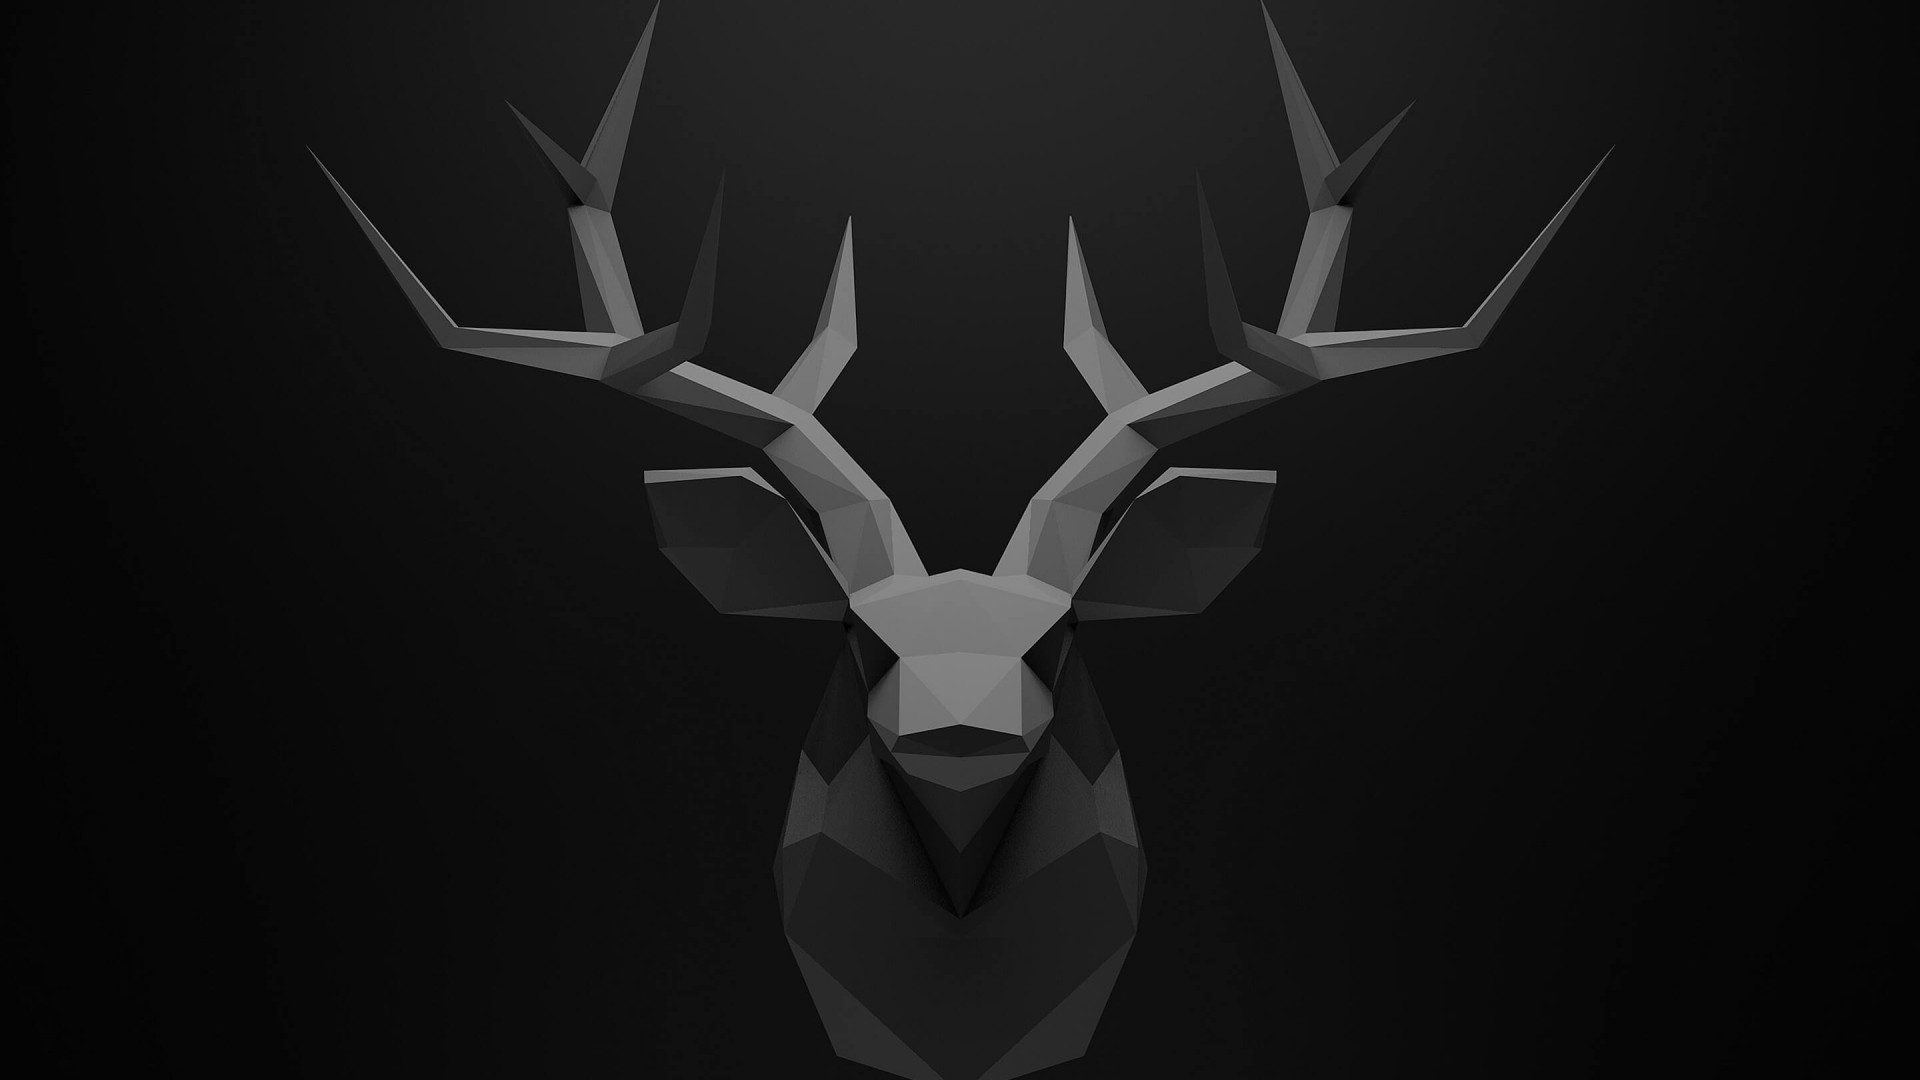 Low Poly Deer Head Wallpaper for Desktop 1920x1080